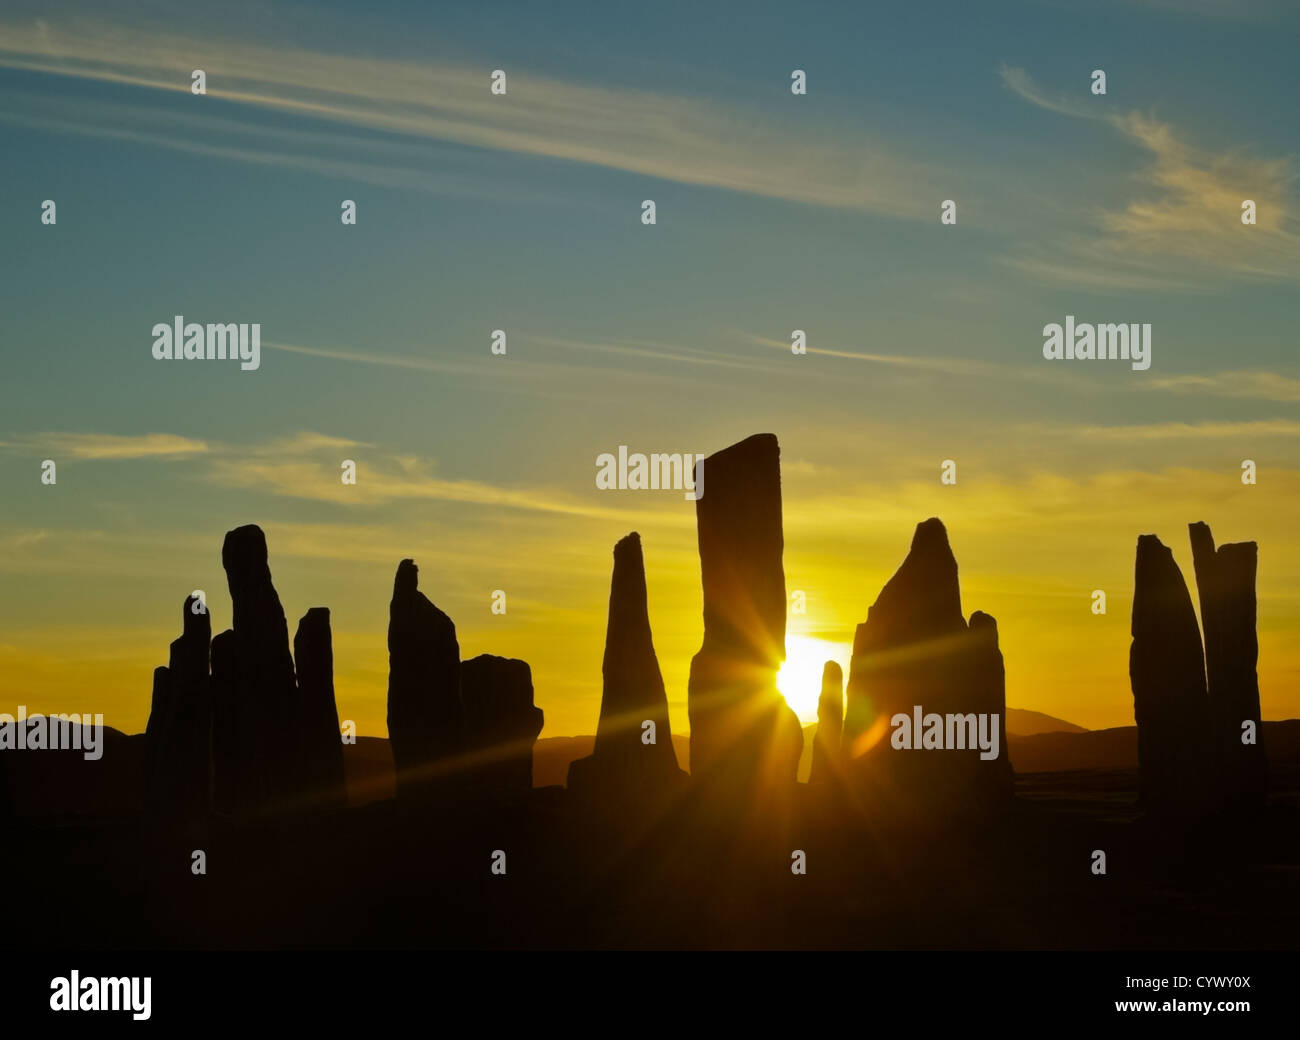 Sonnenuntergang in die Standing Stones von Callanish (Calanais) auf der Insel Lewis äußeren Hebriden, Schottland. Stockfoto